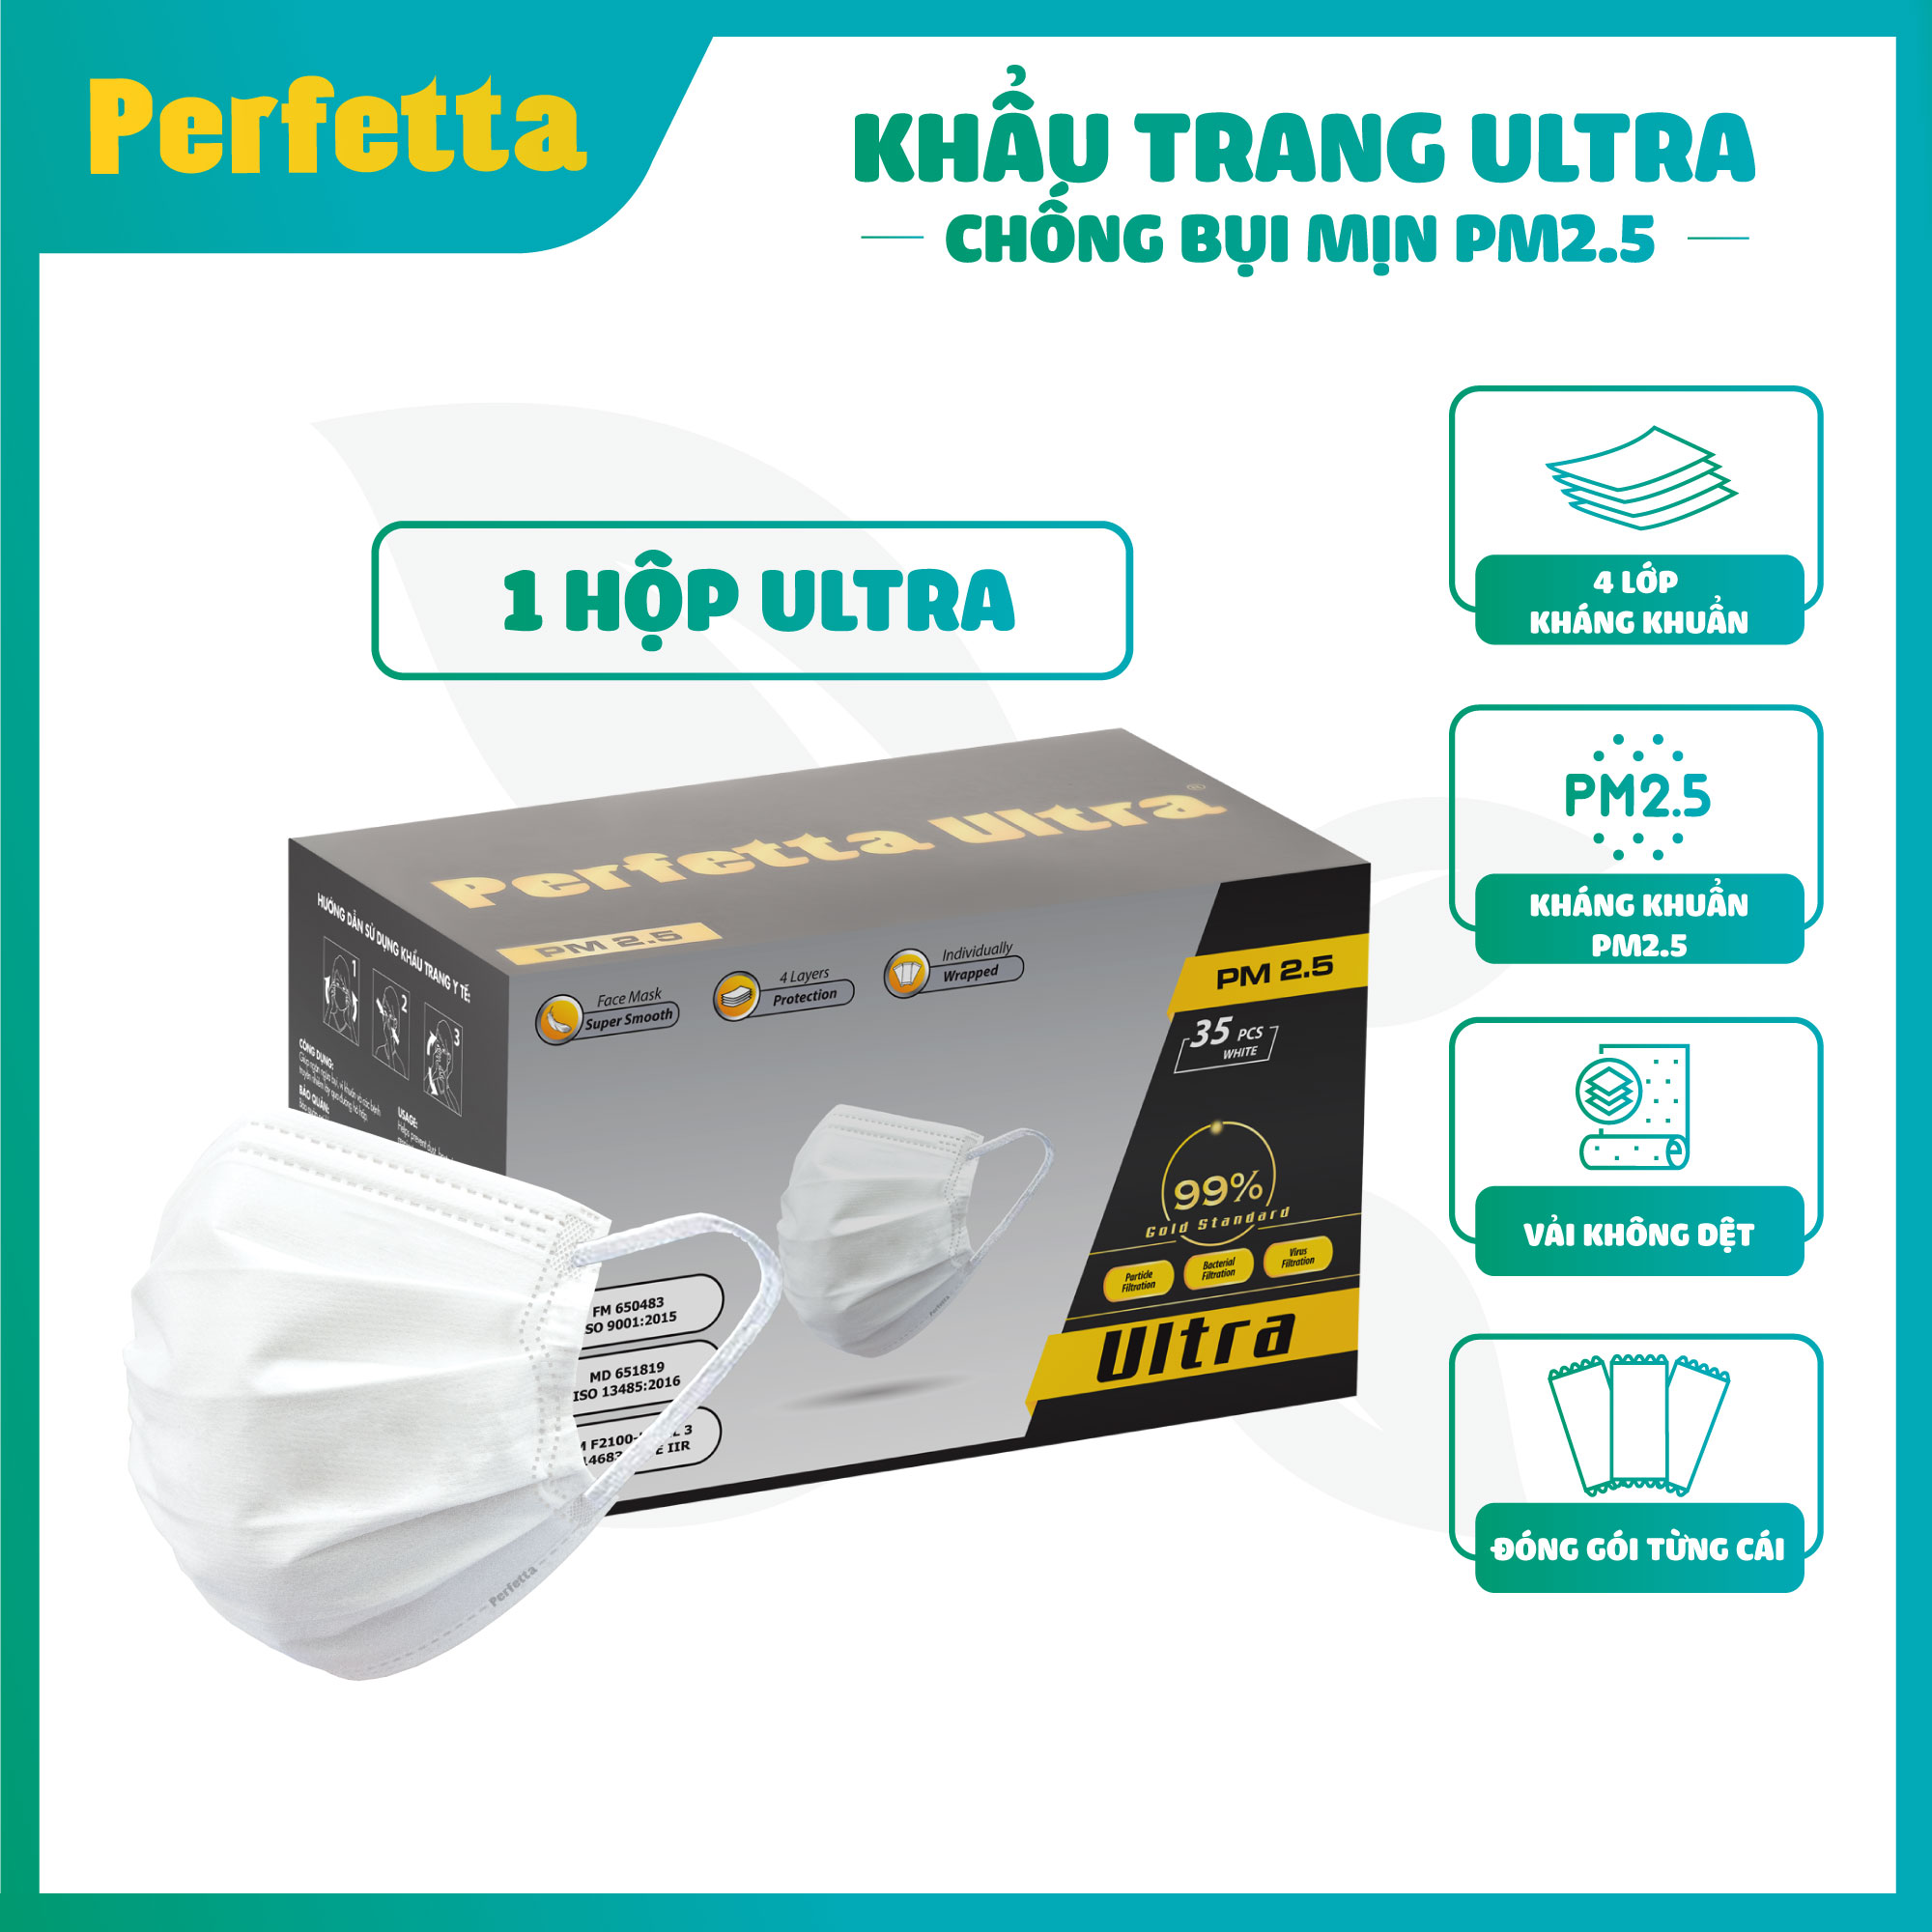 Khẩu trang y tế cao cấp chính hãng Perfetta Ultra 4 lớp chống bụi mịn PM